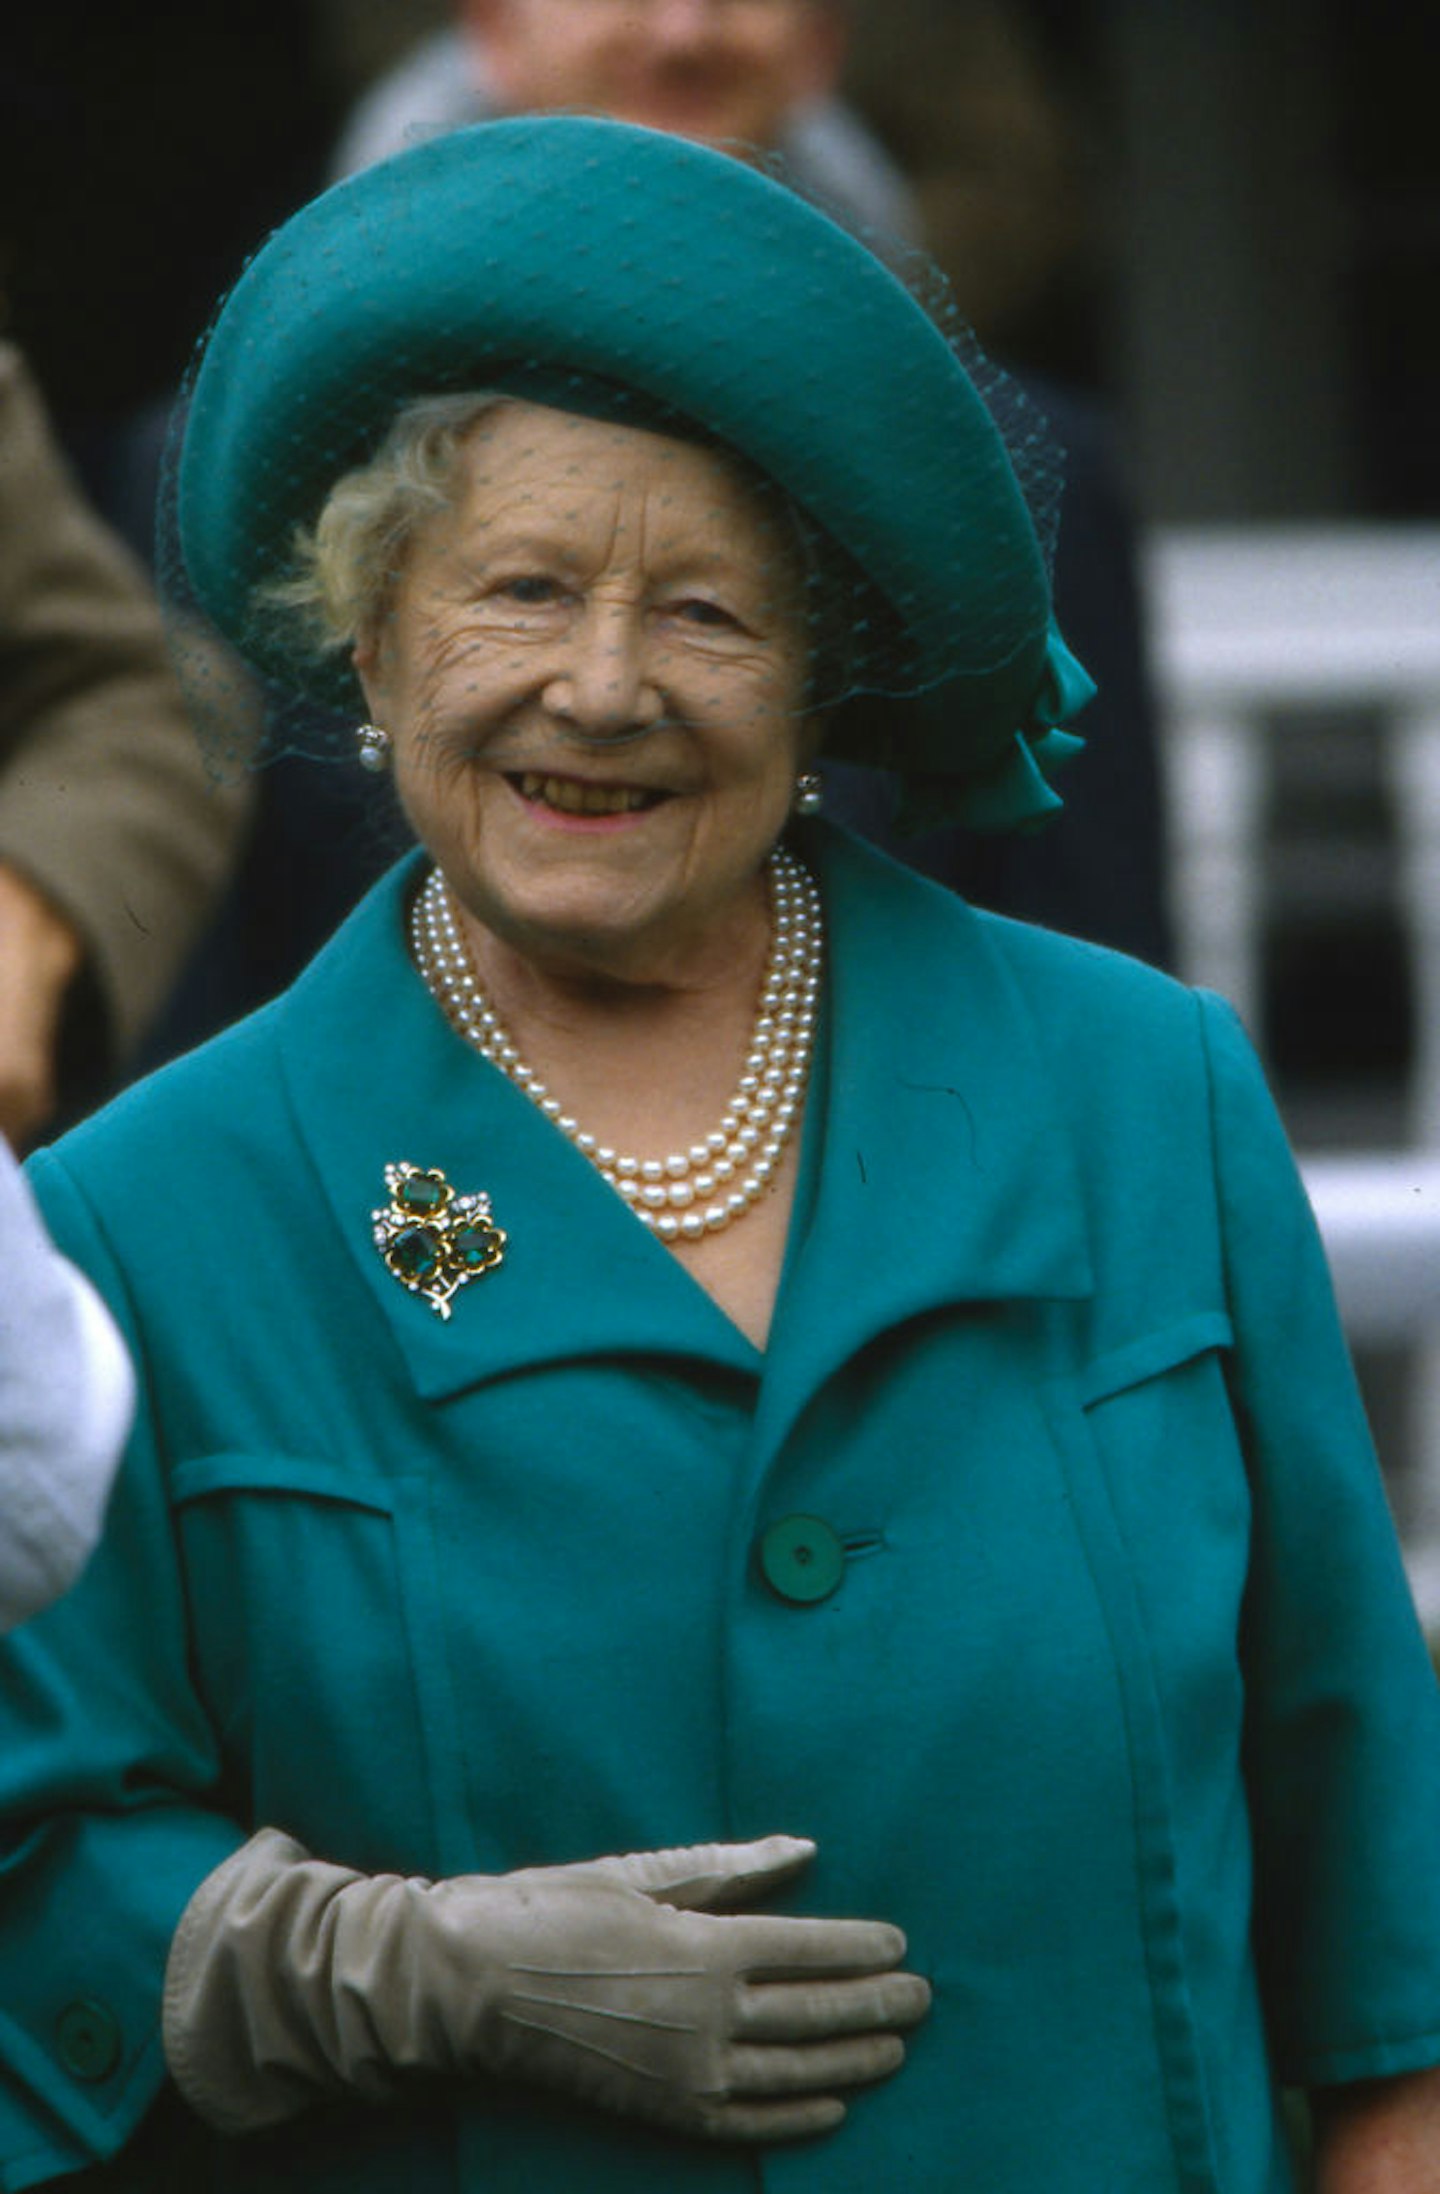 Queen Elizabeth The Queen Mother in the 1990s